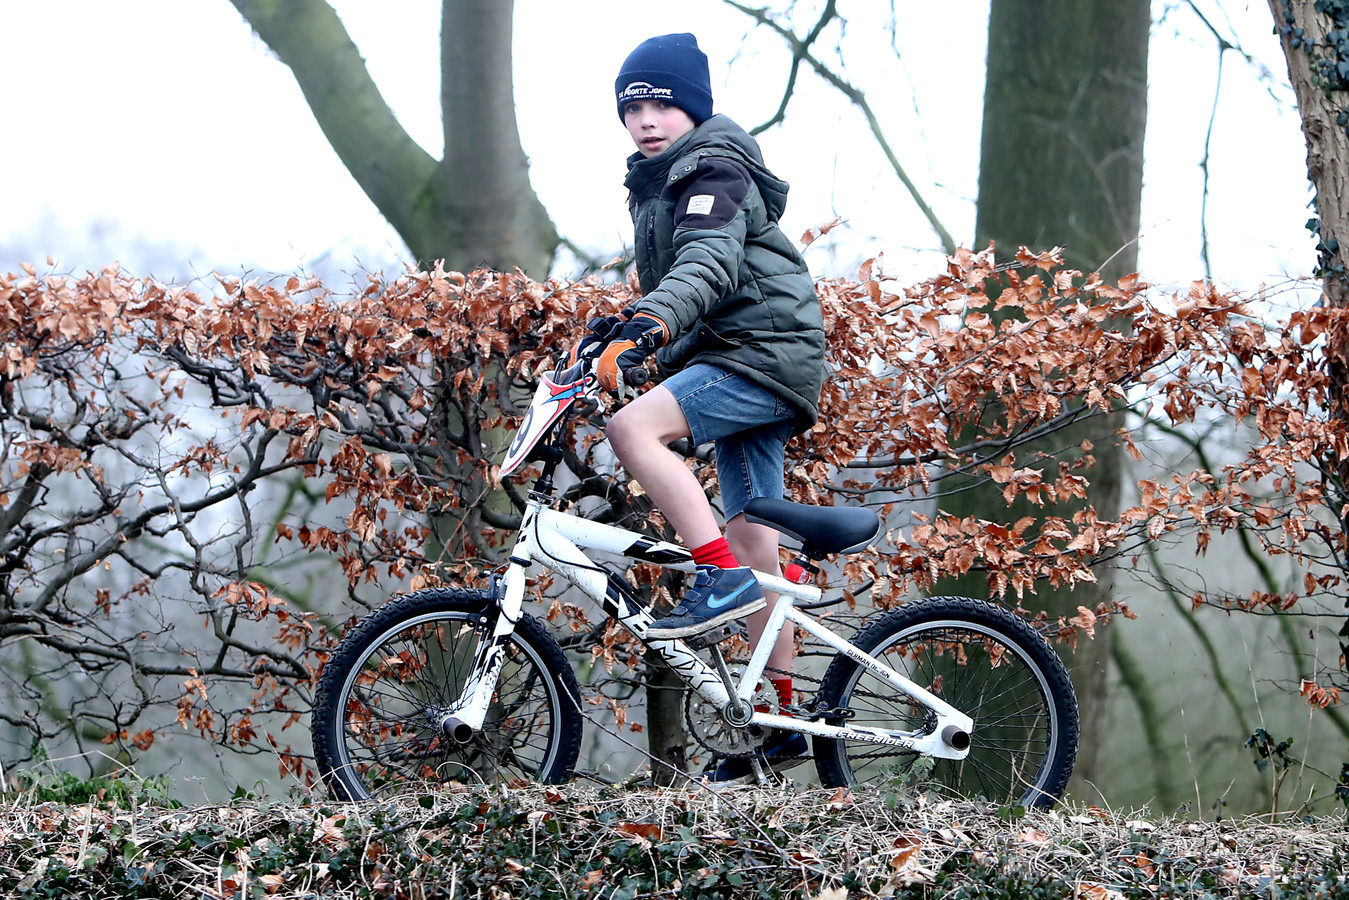 Saga licht Kikker Jayden (9) is koning in dragen van korte broek, ook bij vorst | Foto |  gelderlander.nl